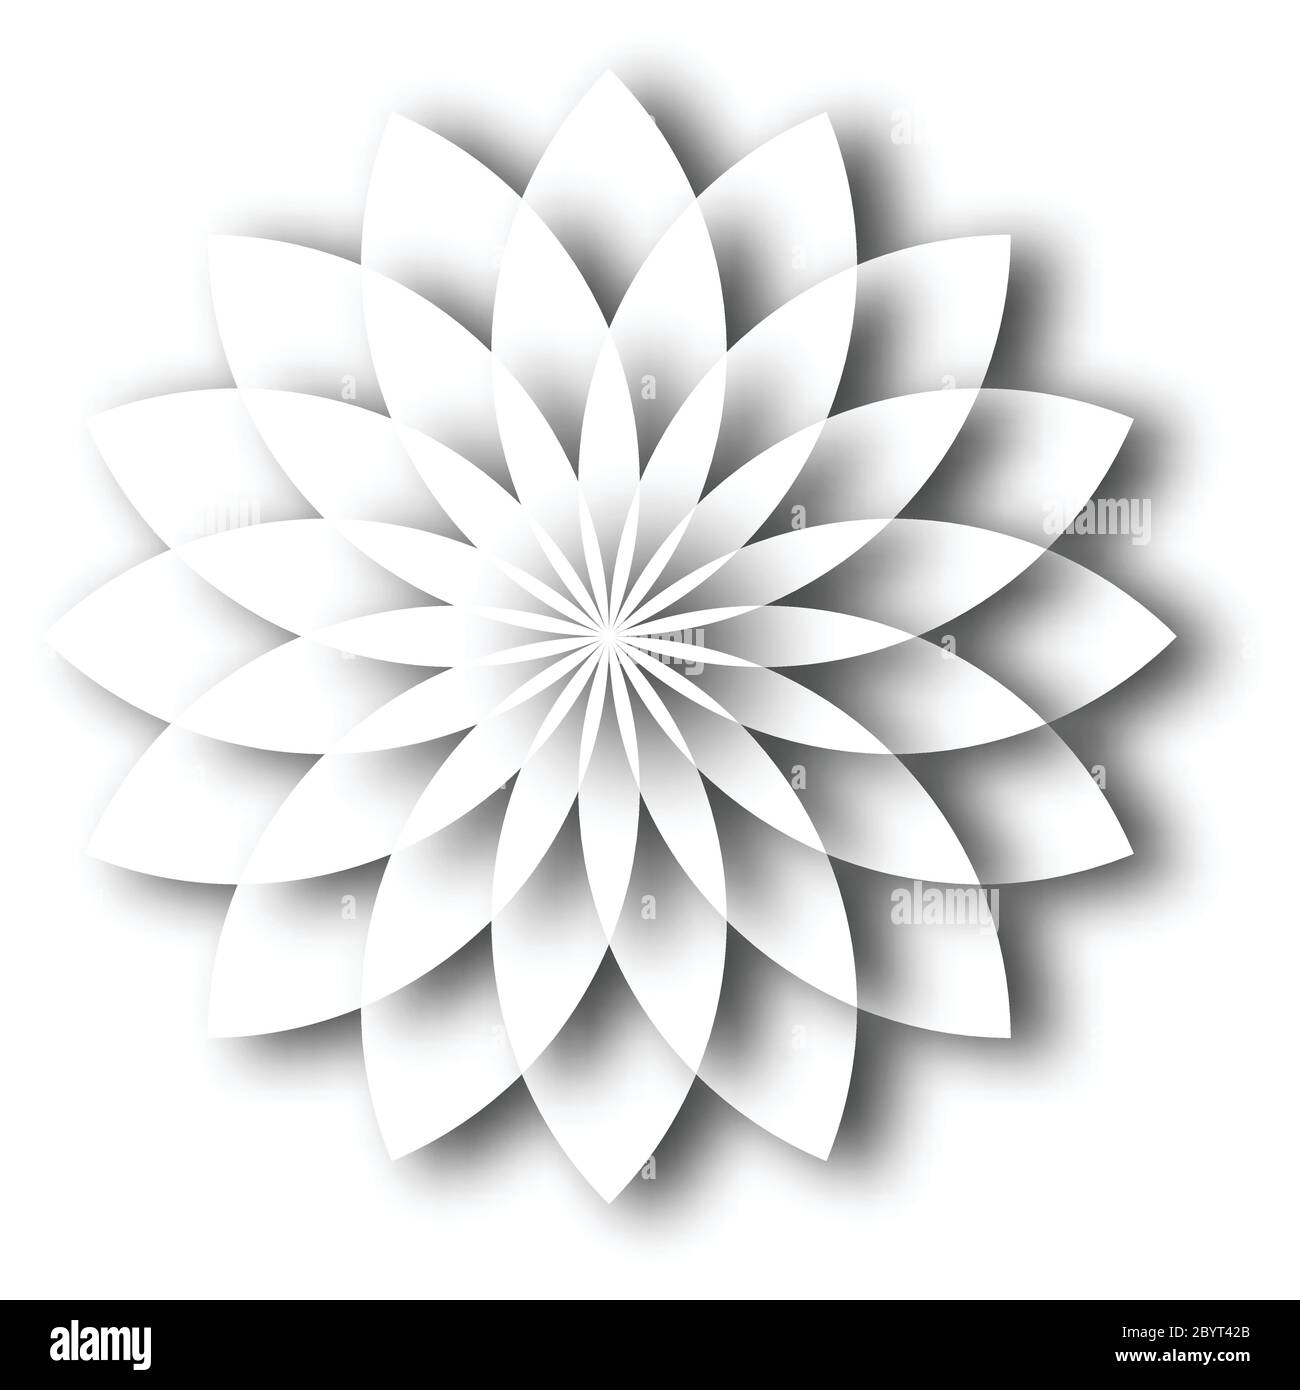 White paper fiore di loto. Elemento di progettazione con effetto 3D e ombra su sfondo bianco. Illustrazione vettoriale. Illustrazione Vettoriale